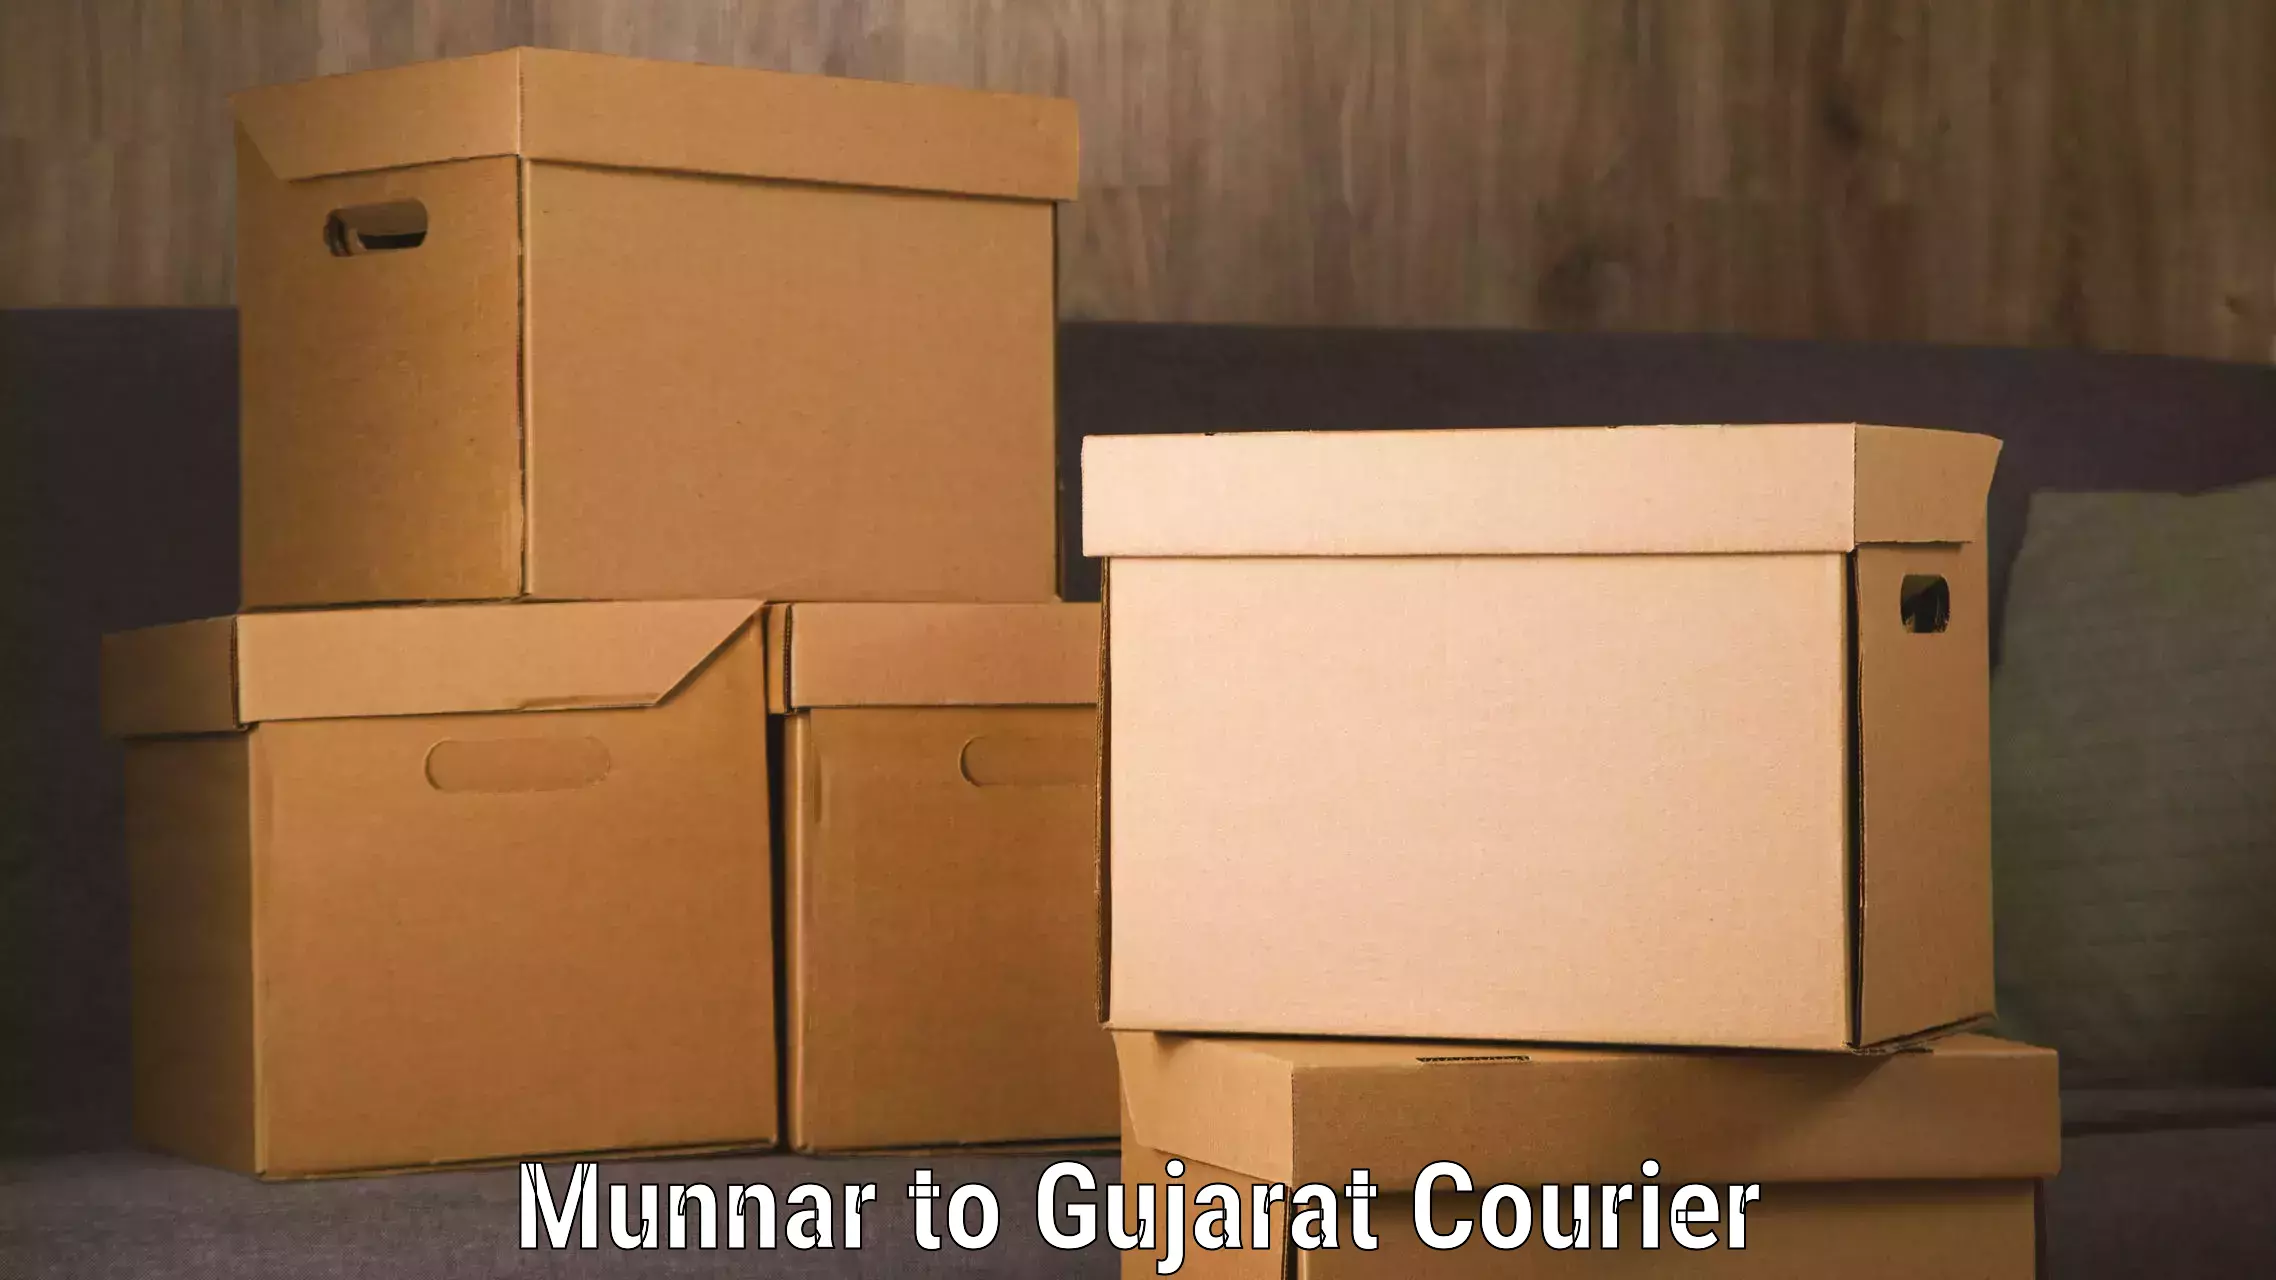 Digital courier platforms Munnar to Botad